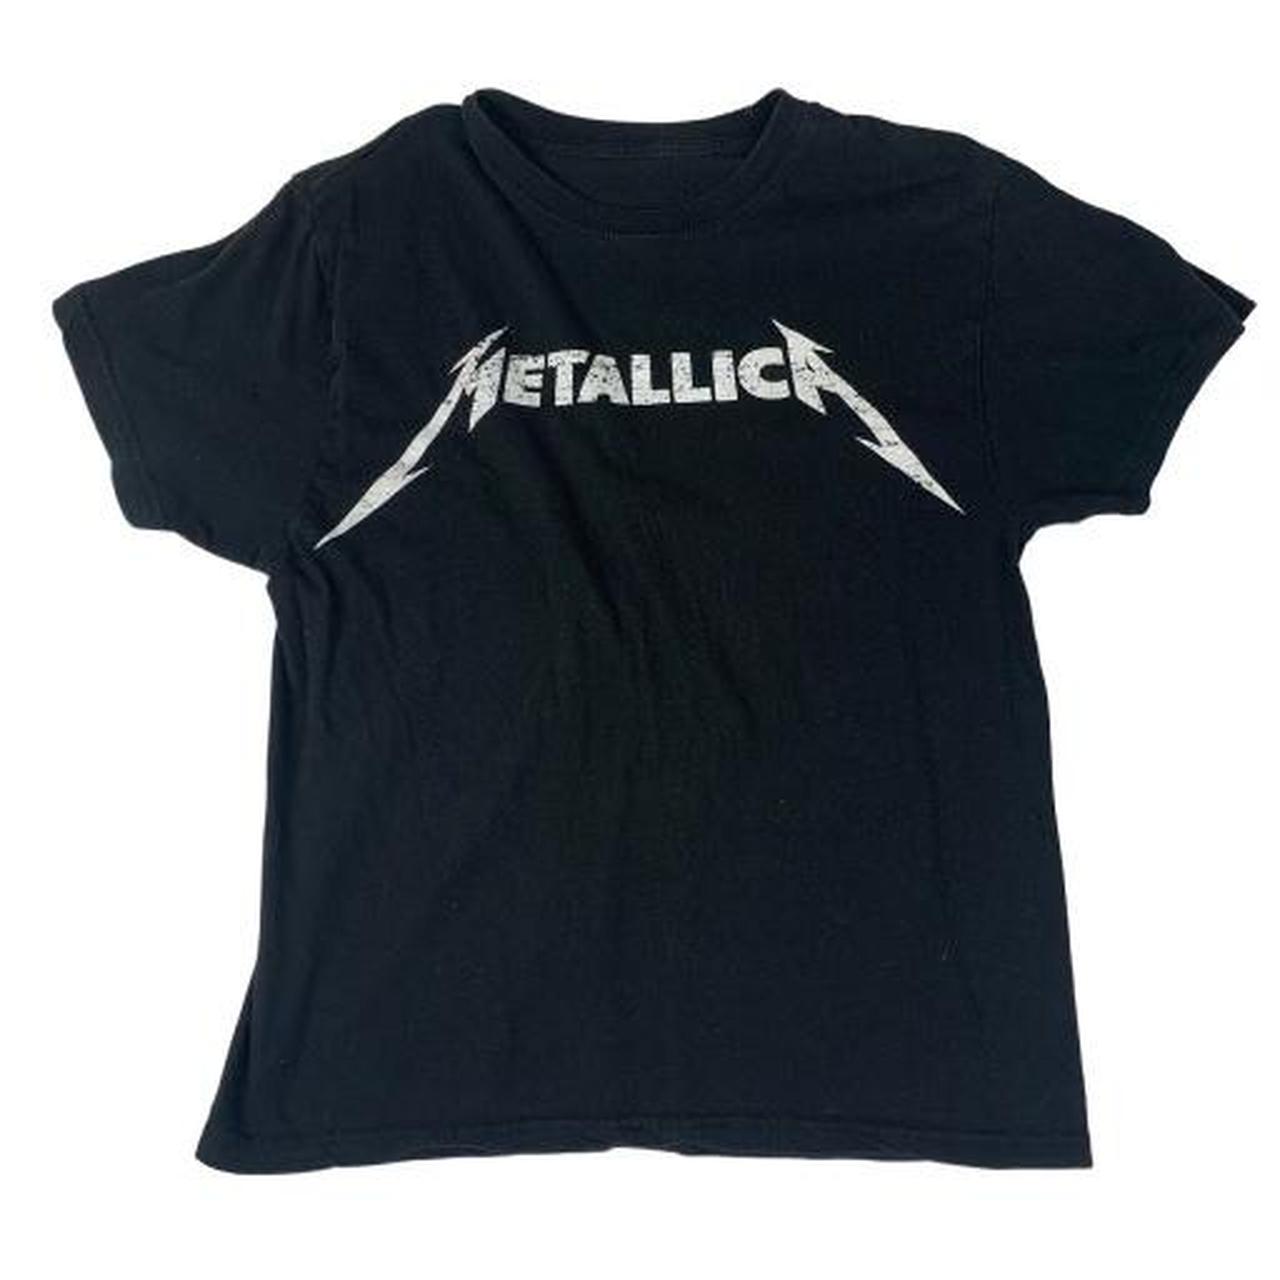 metallica graphic t shirt ! size small #bandshirt... - Depop